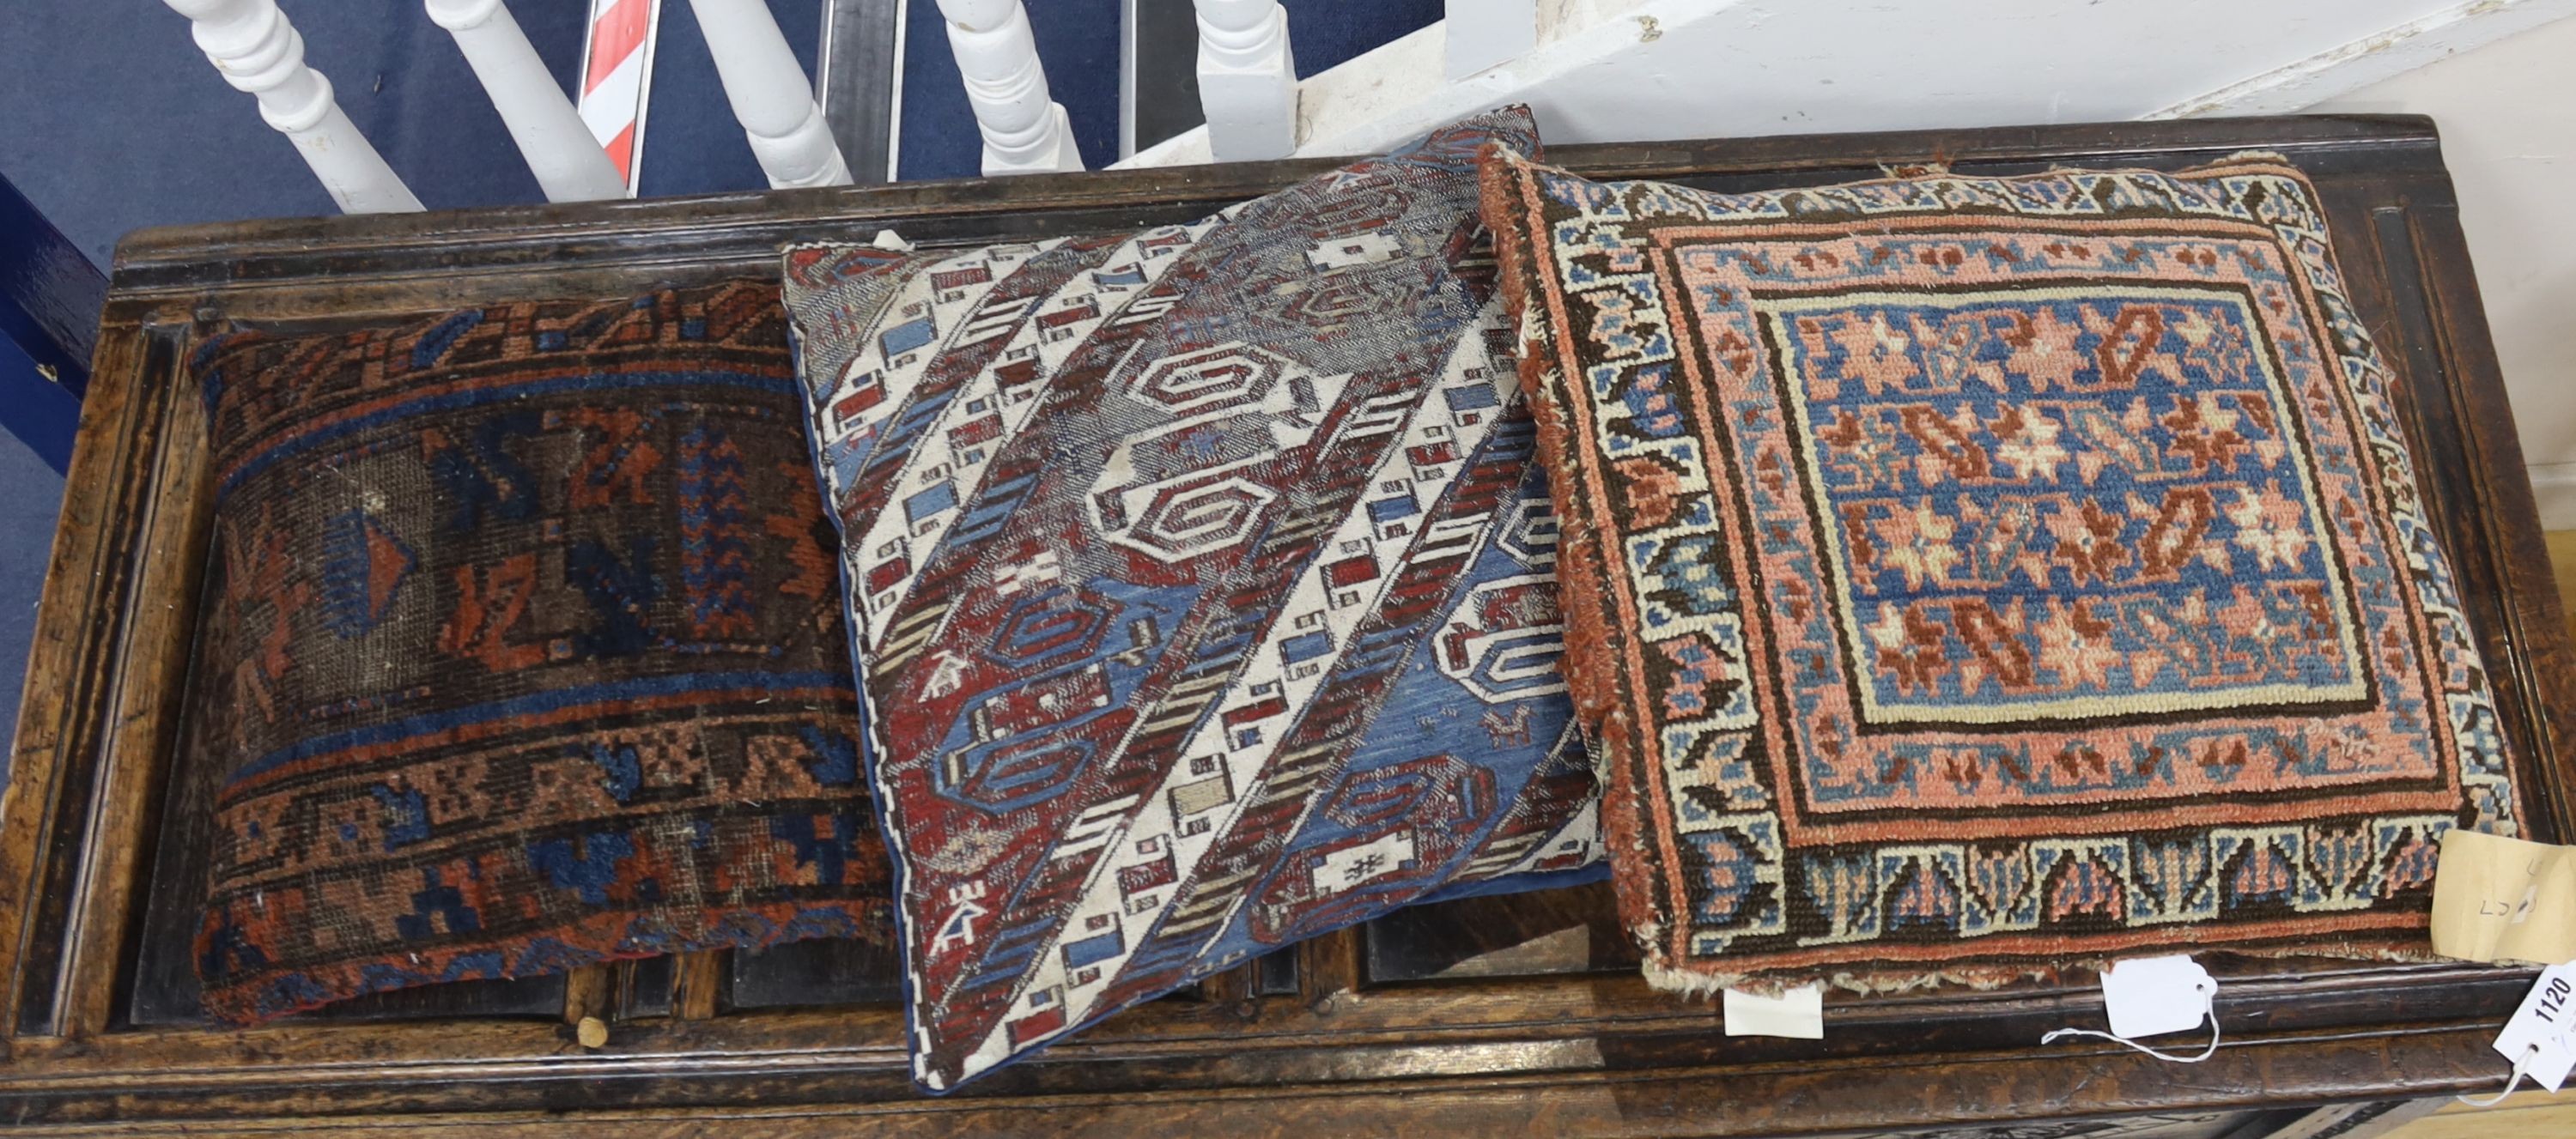 Three Persian / Caucasian cushions